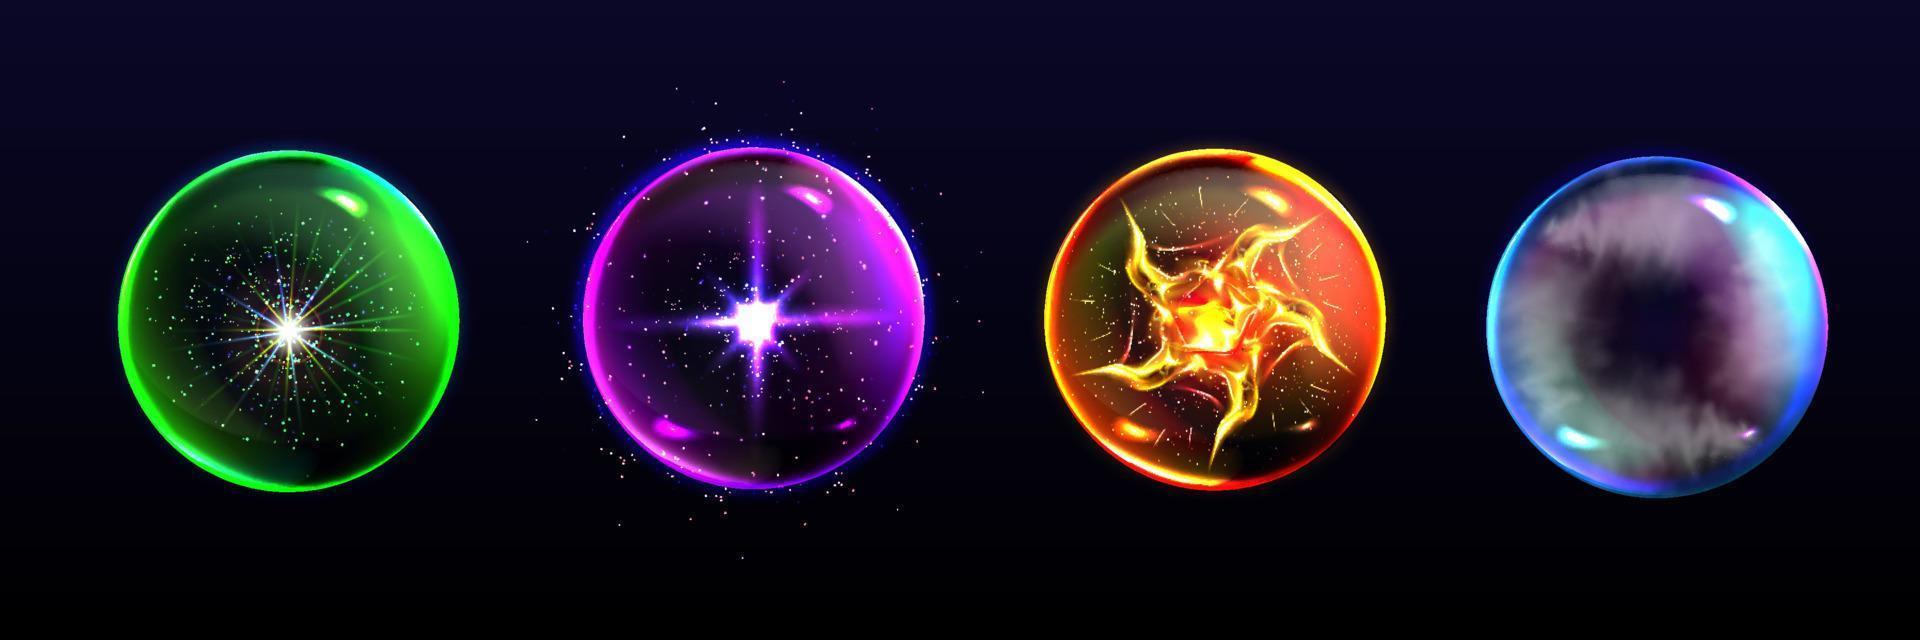 magi sfärer, kristall bollar av annorlunda färger vektor